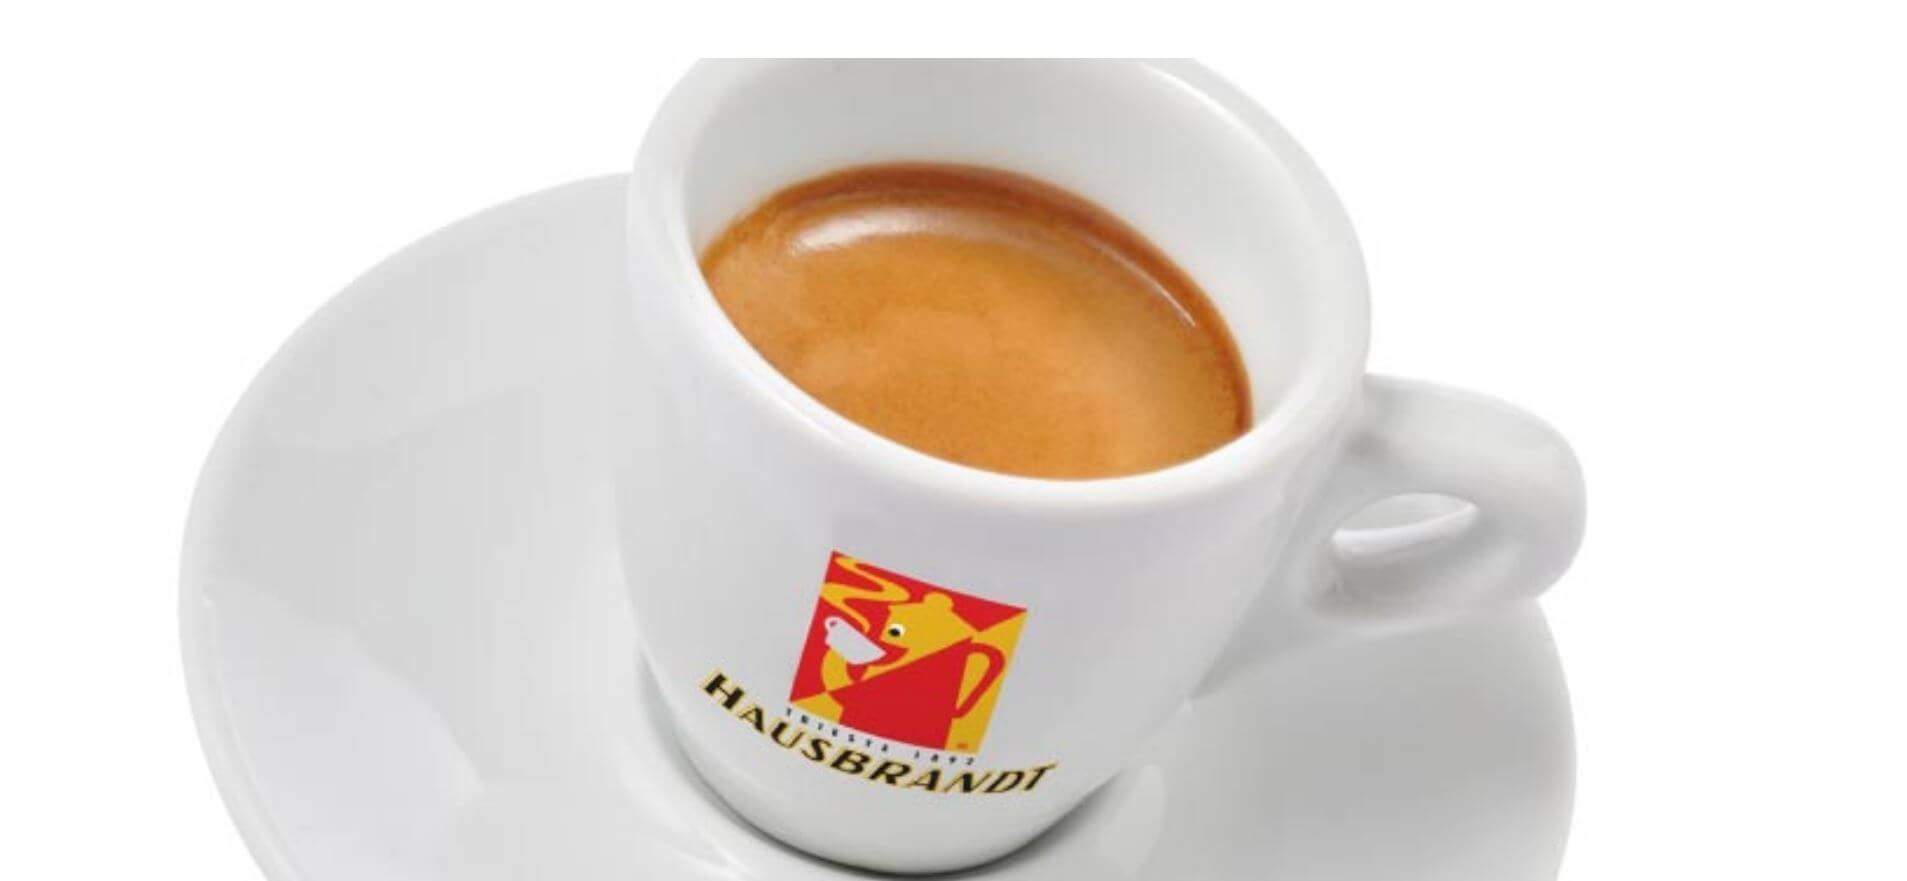 Hausbrandt-Espressotasse für lecker espresso kaffee